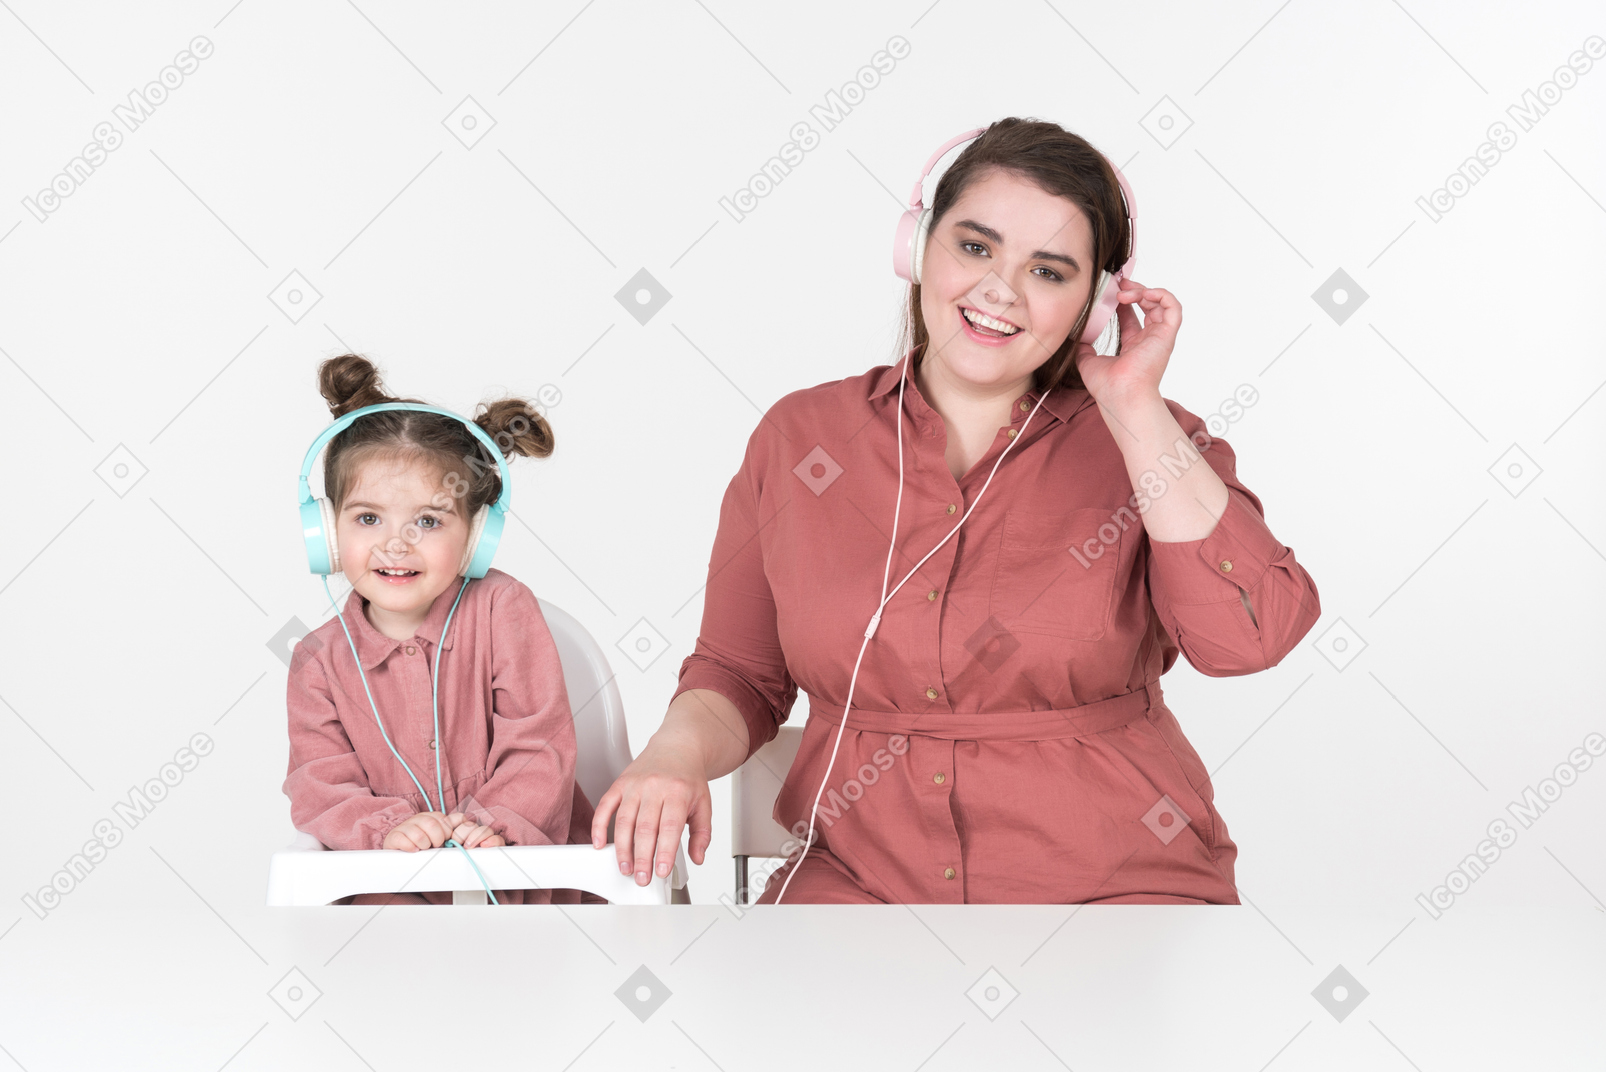 La madre e la figlia piccola, vestite con abiti rossi e rosa, sedute a tavola, ascoltando la musica insieme